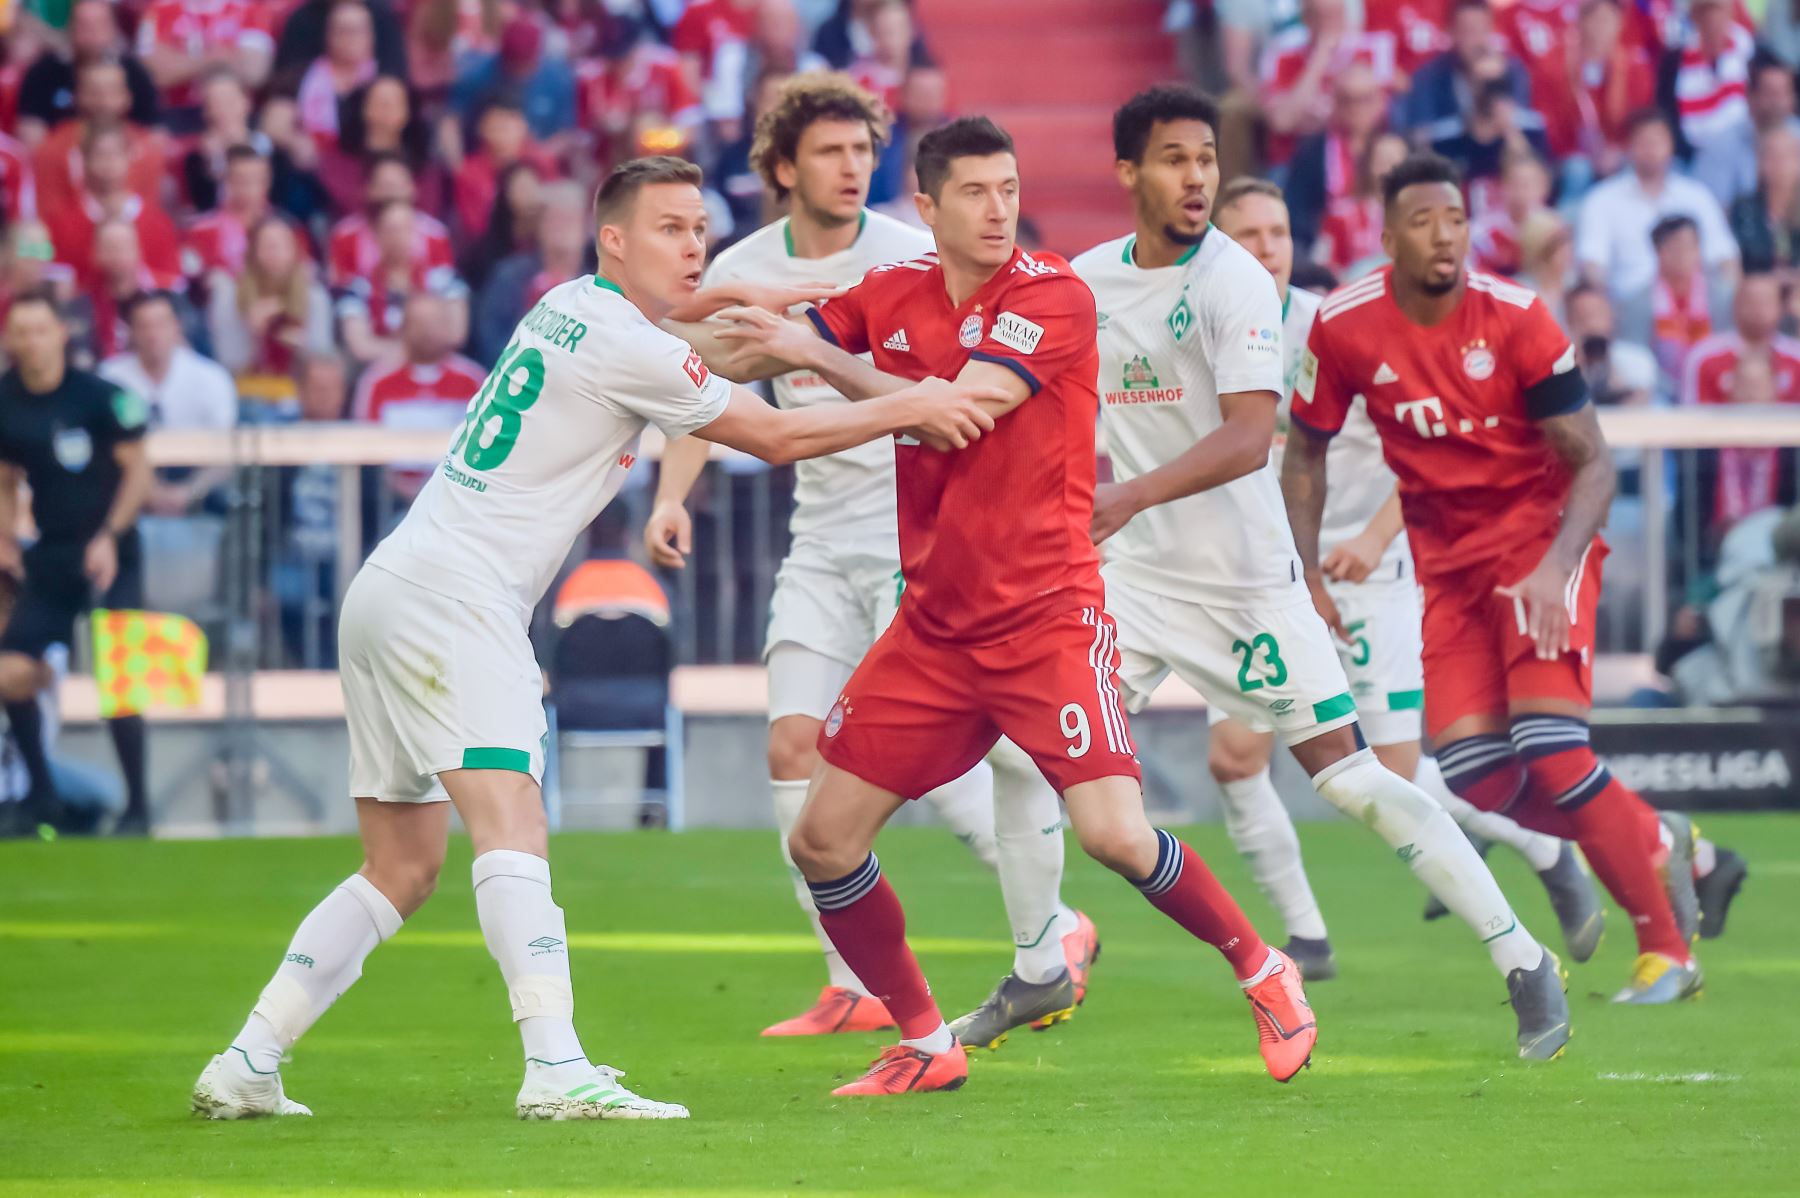 El defensor del Final de Bremen Niklas Moisander (L) y el delantero polaco del Bayern Munich, Robert Lewandowski (C) compiten por el balón durante el partido de fútbol de la Bundesliga de la Primera División alemana FC Bayern Munich vs SV Werder Bremen.Foto:AFP